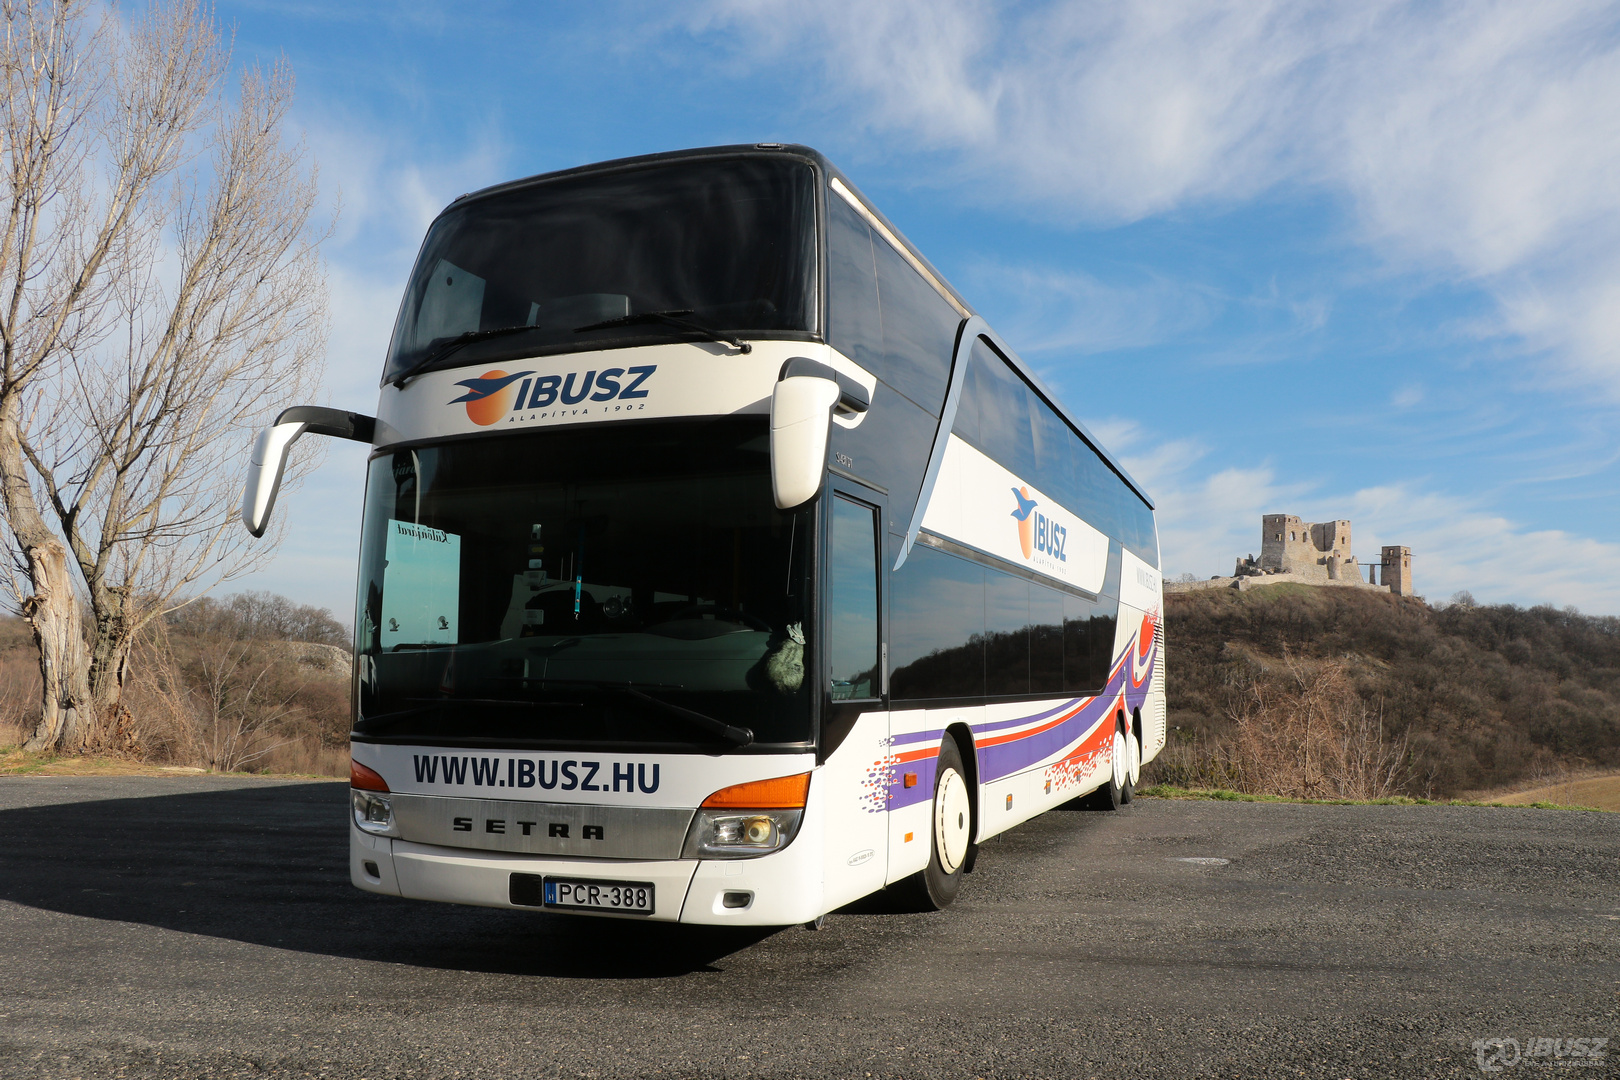 Az IBUSZ által szervezett Halkidiki expressz 2023 buszjárat járművei folyamatosan karbantartott, biztonságos modellek, melyek kényelmes utazást biztosítanak.